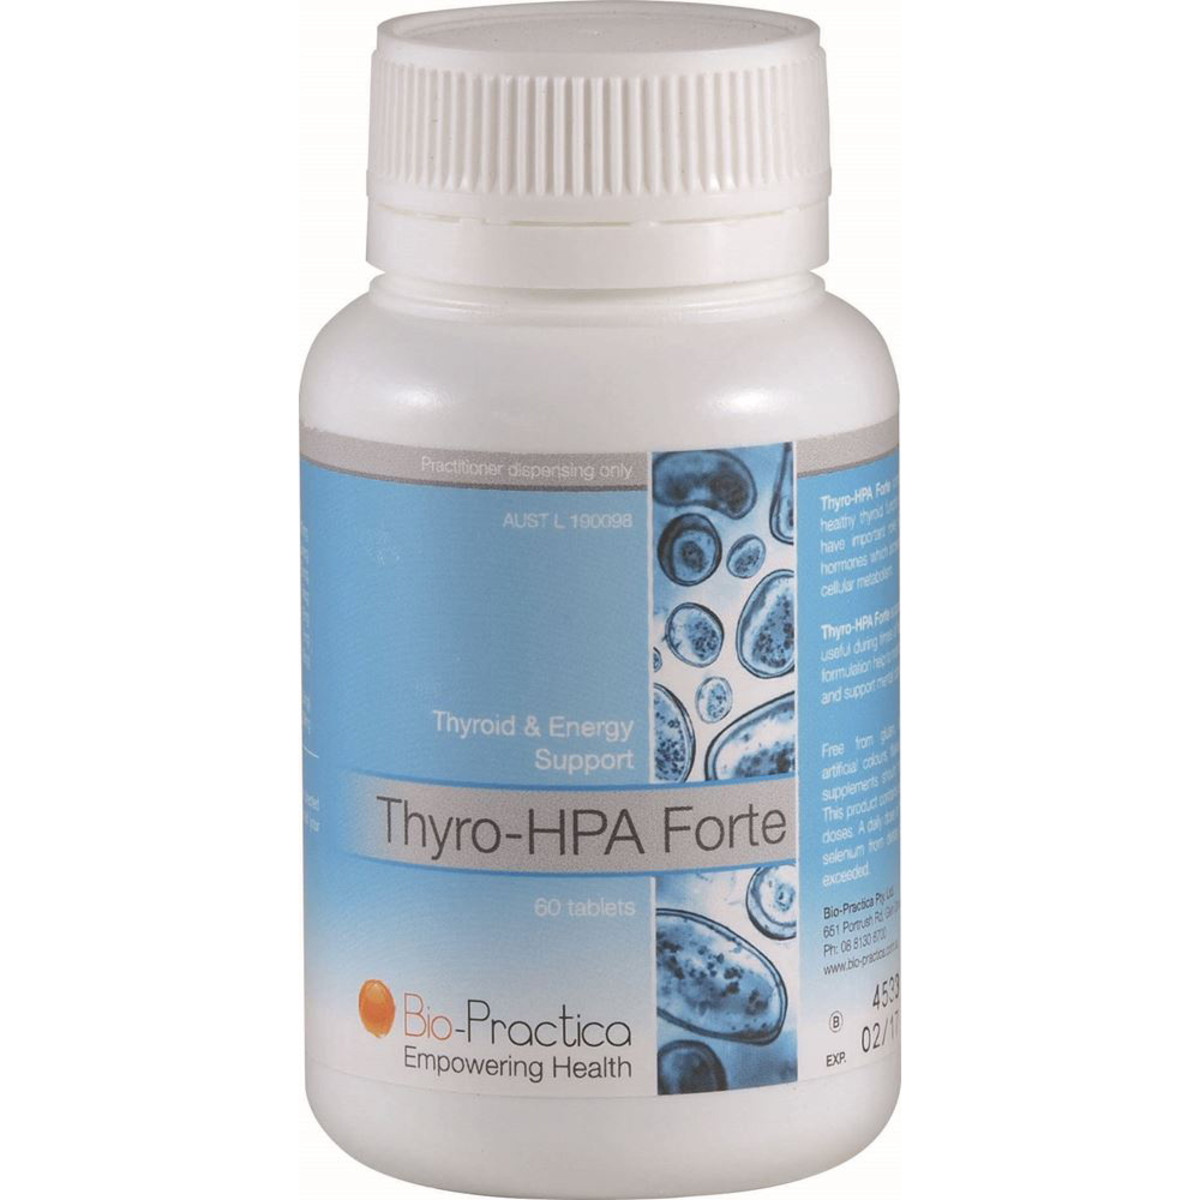 BioPractica Thyro HPA Forte